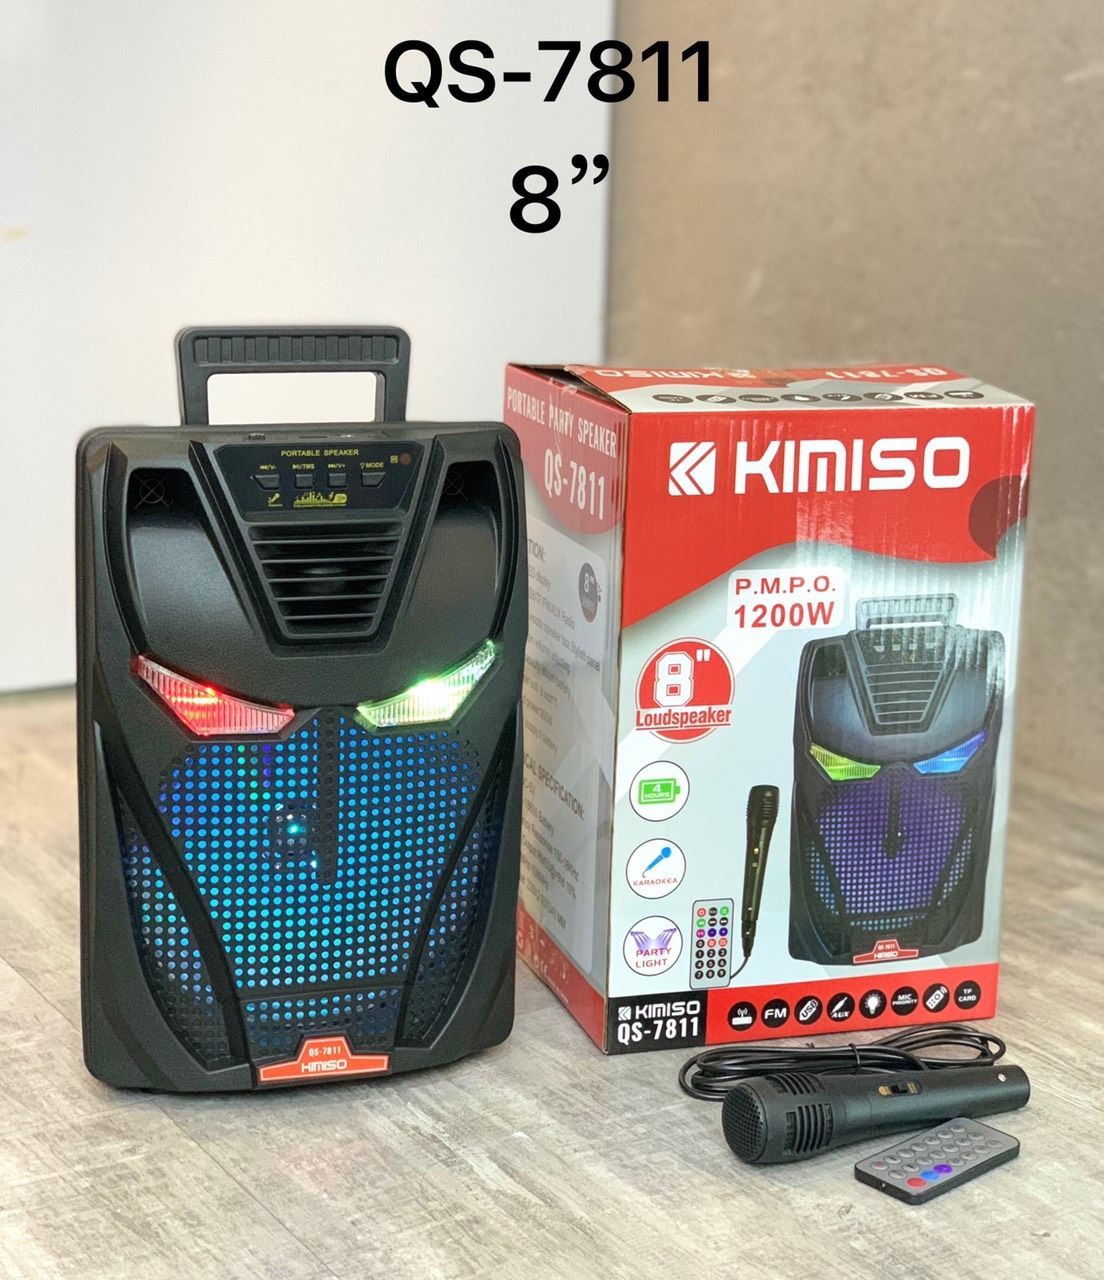 Loa Bluetooth Kimiso QS-7811 giá sỉ